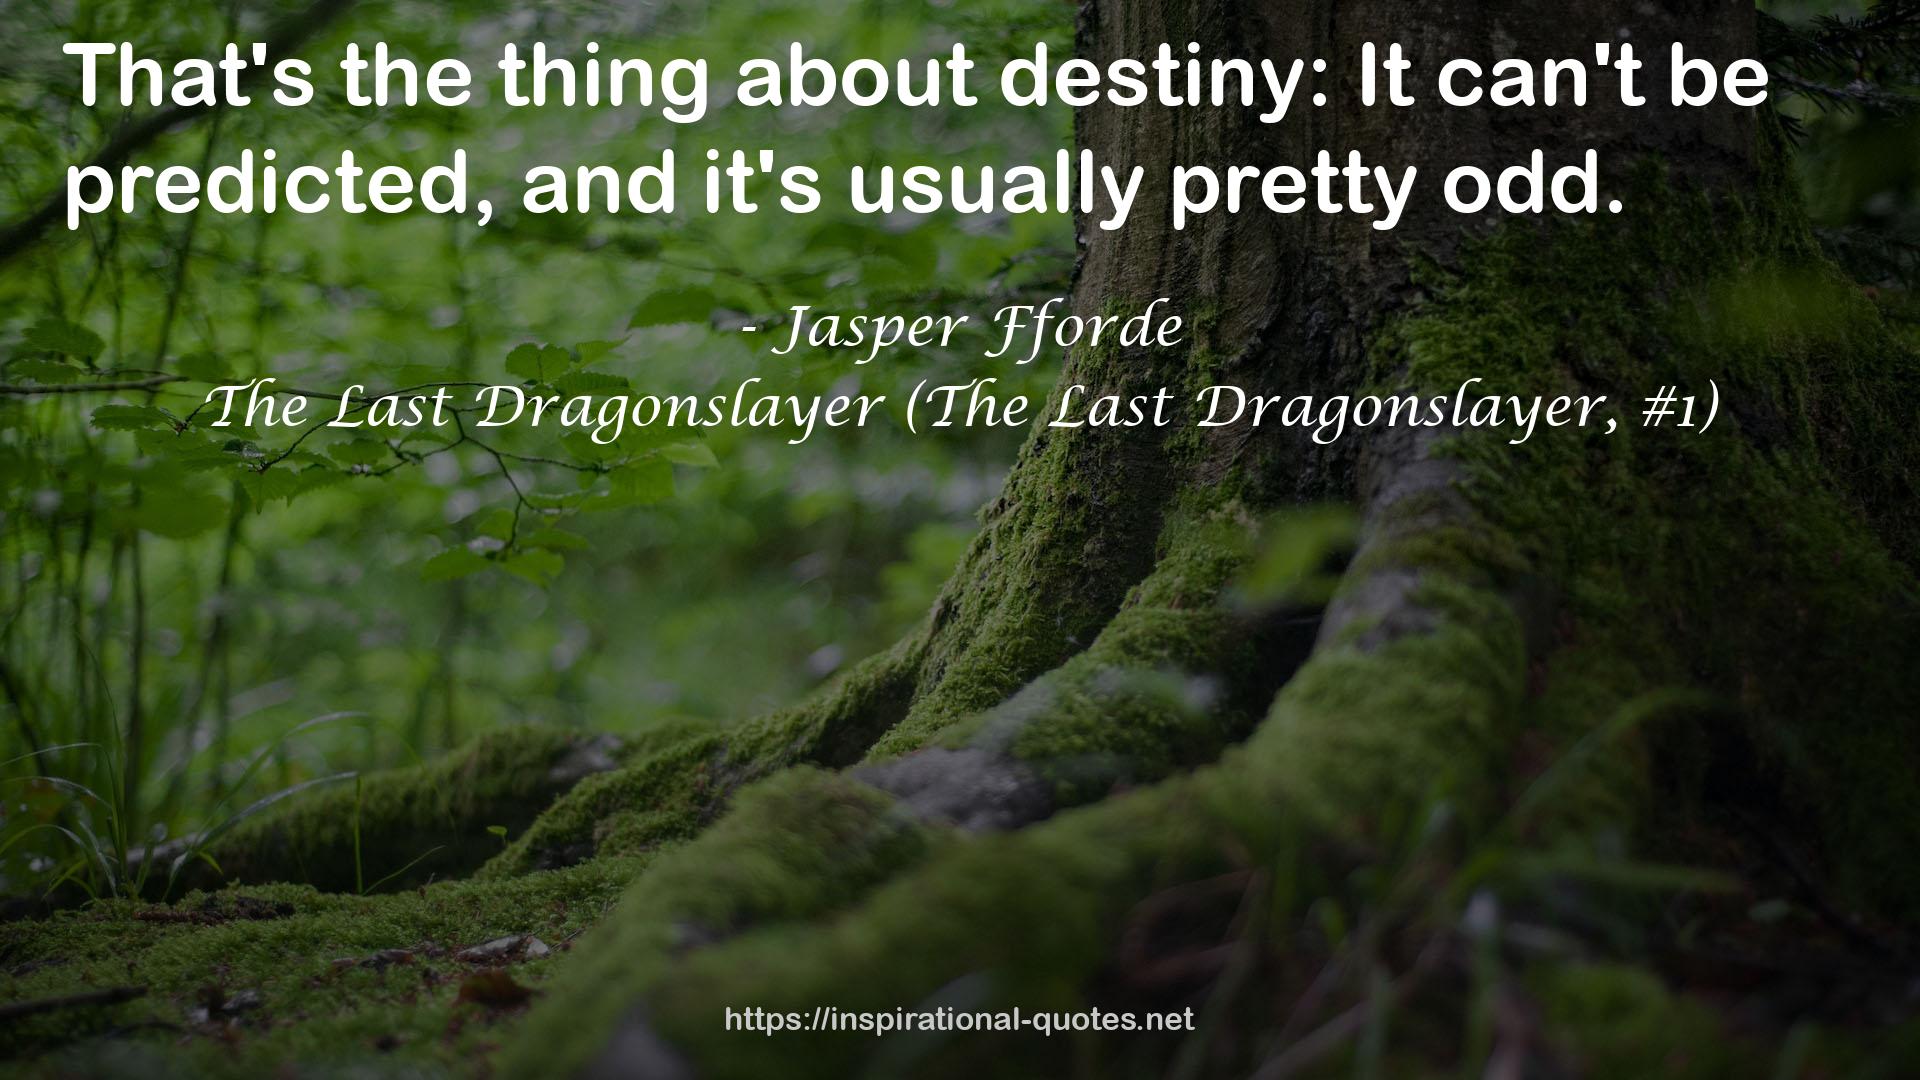 The Last Dragonslayer (The Last Dragonslayer, #1) QUOTES